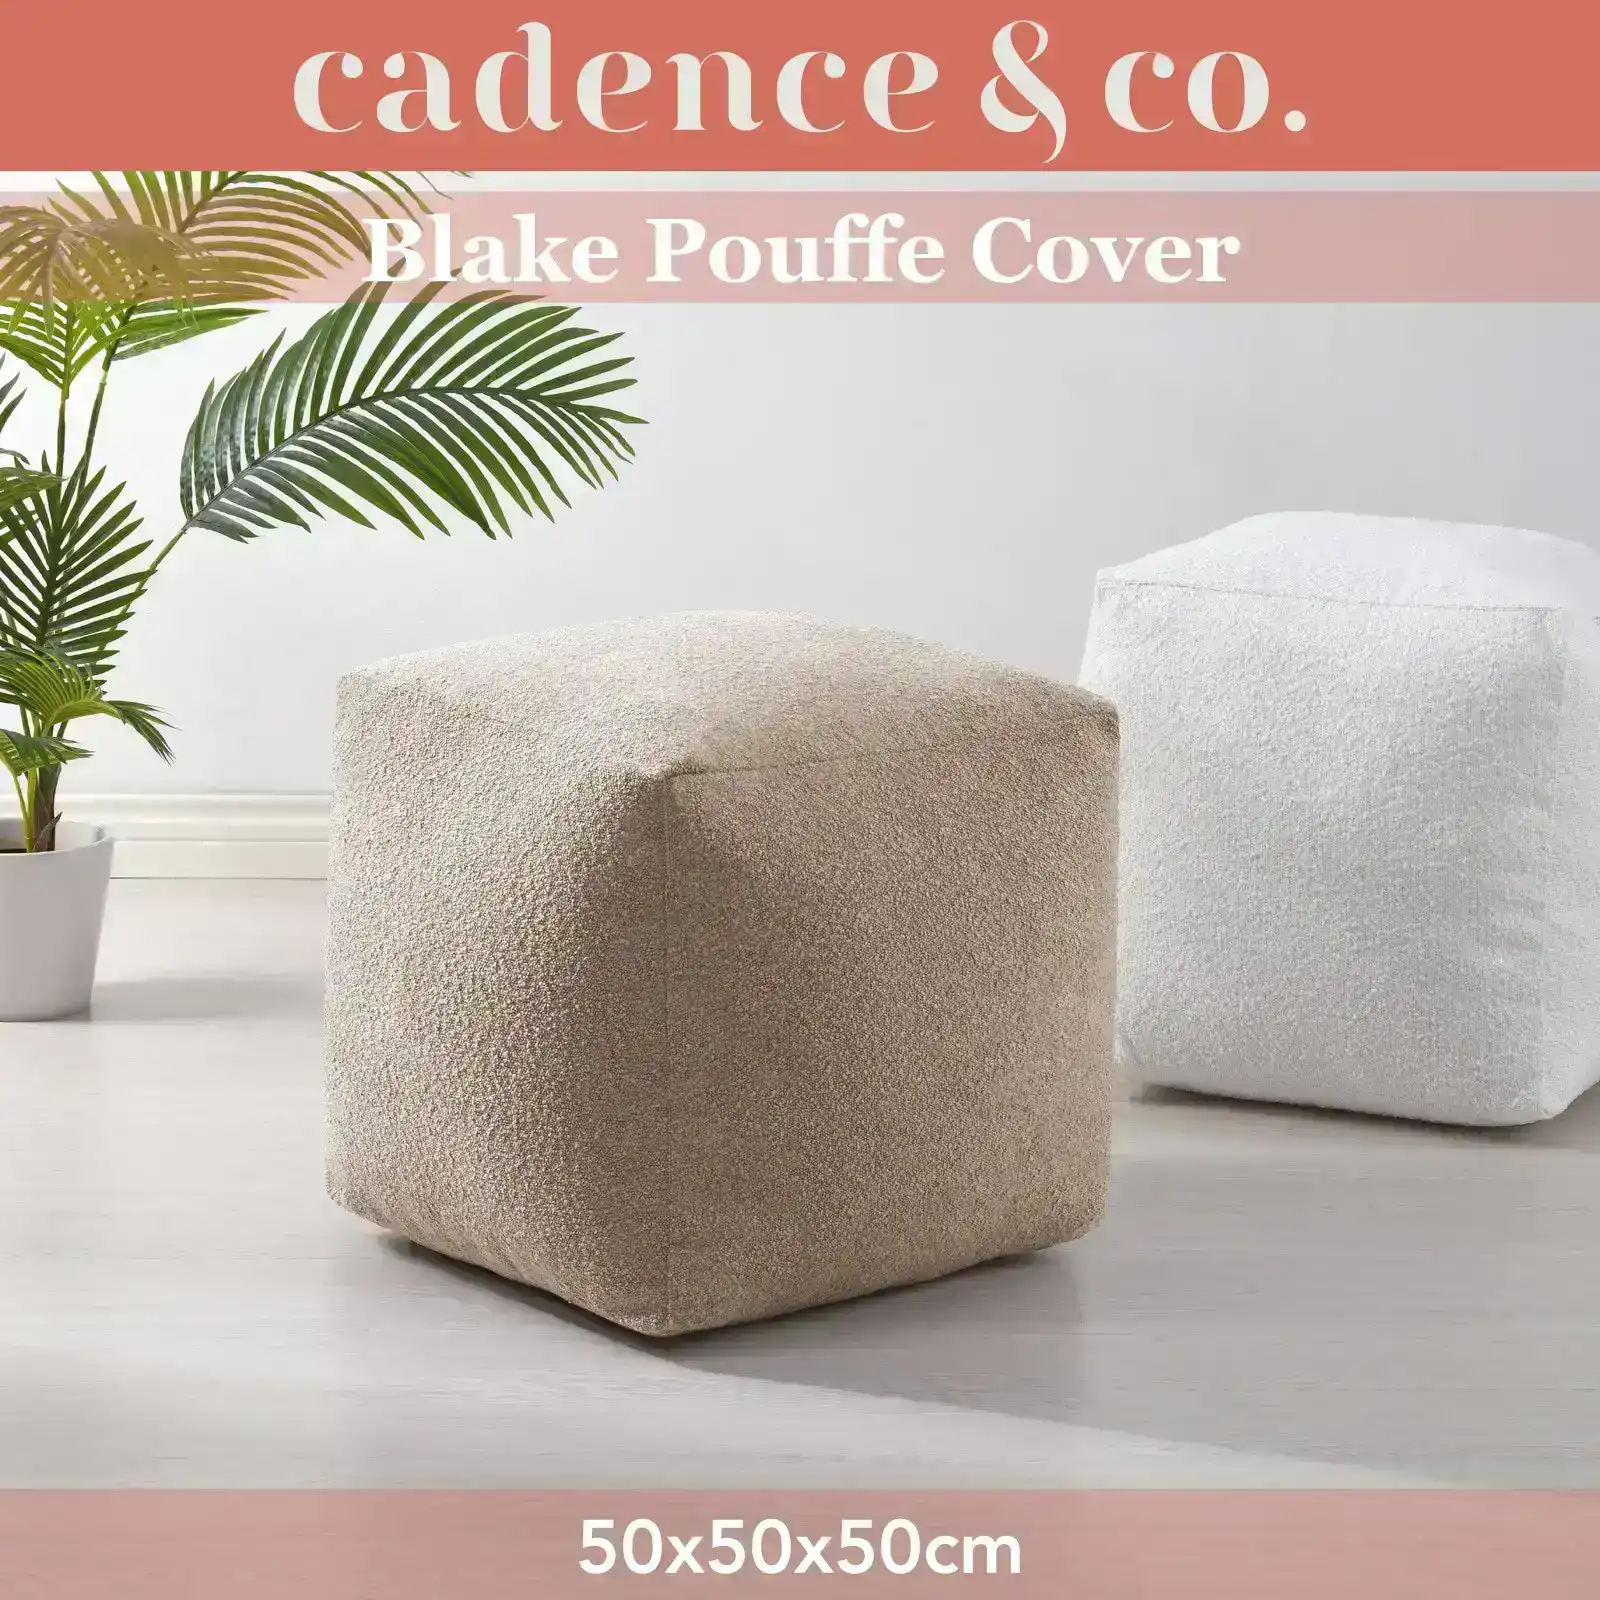 Cadence & Co. Blake Boucle Pouffe Cover Tan 50x50x50cm